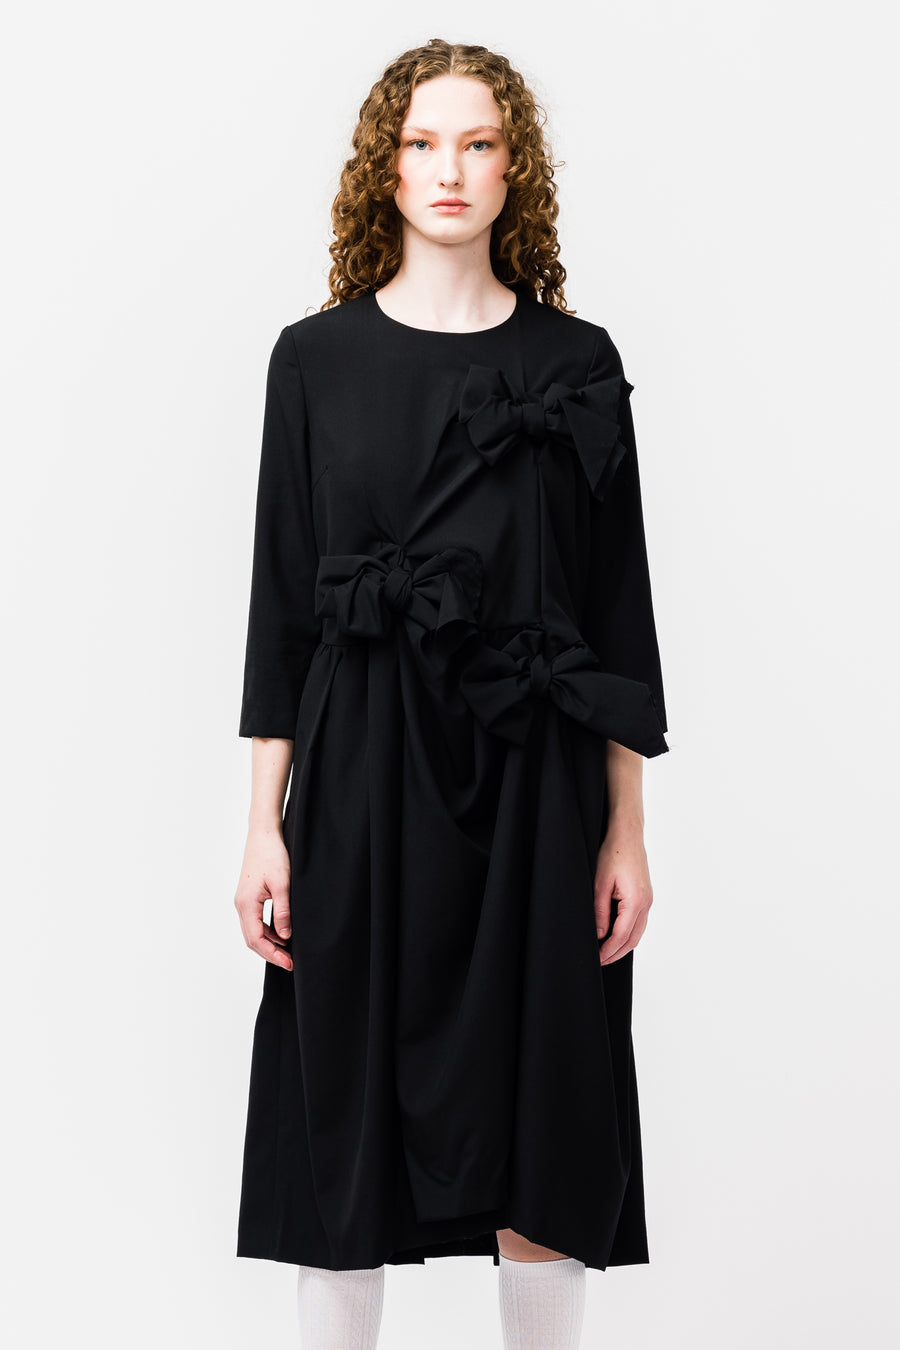 鍔 bestemt krig Black Tropical Wool Bow Dress in Black